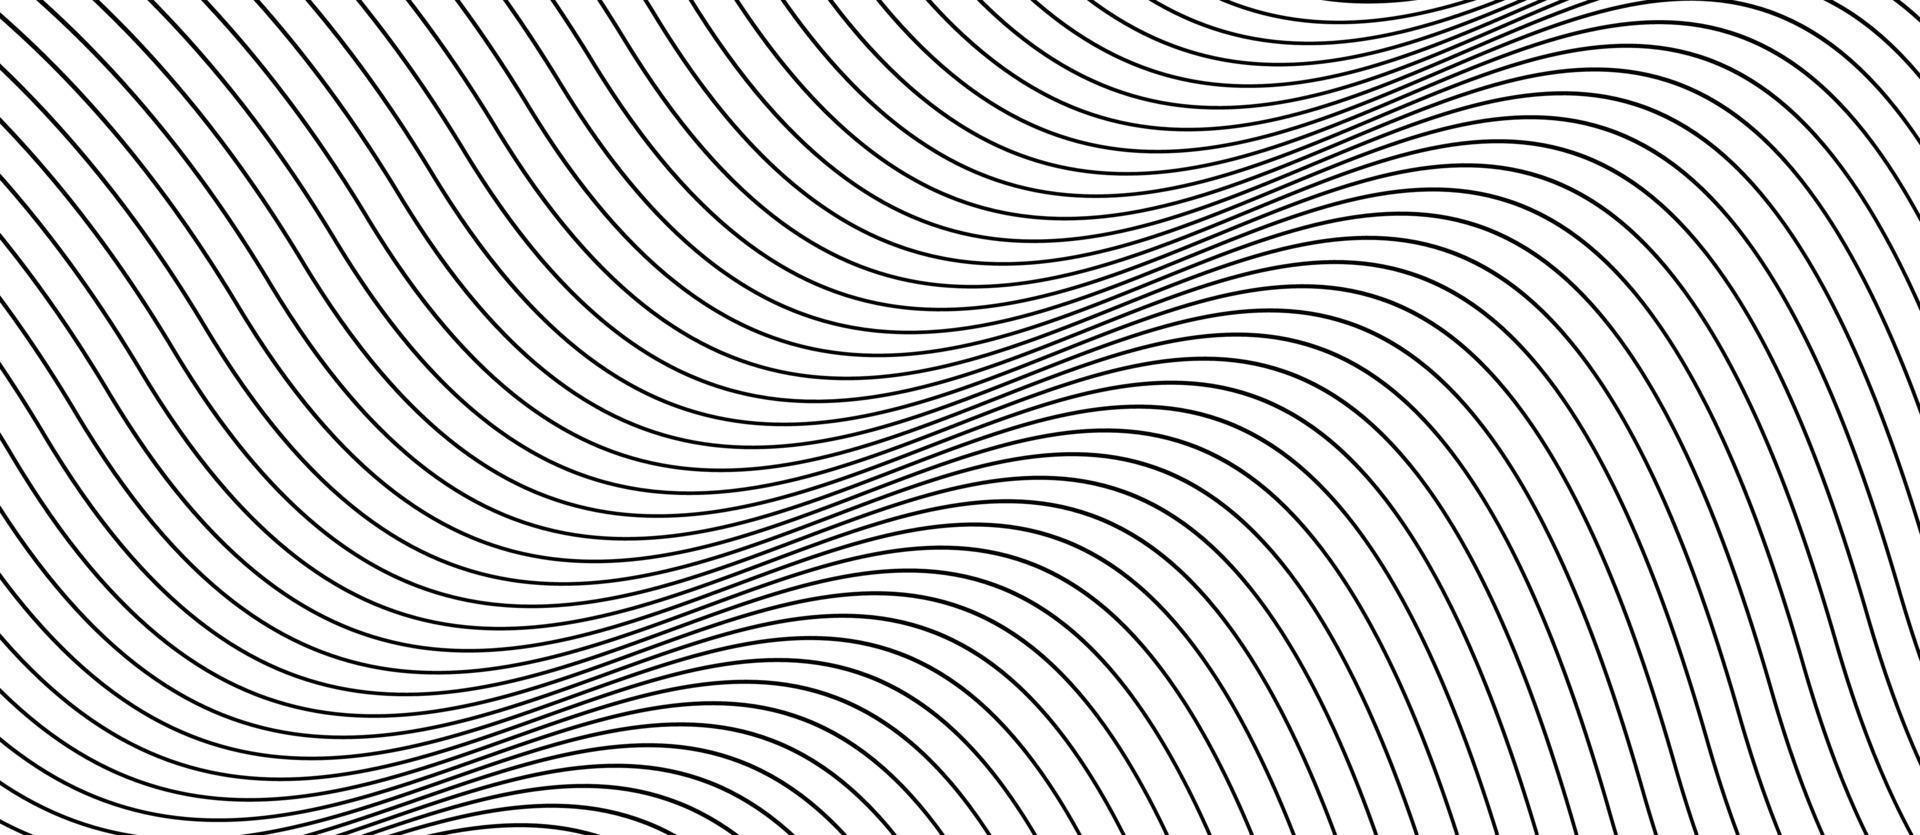 linhas geométricas minimalistas simples abstraem o fundo. padrão de linhas cinzas. vetor de design de onda de linhas de fundo de negócios